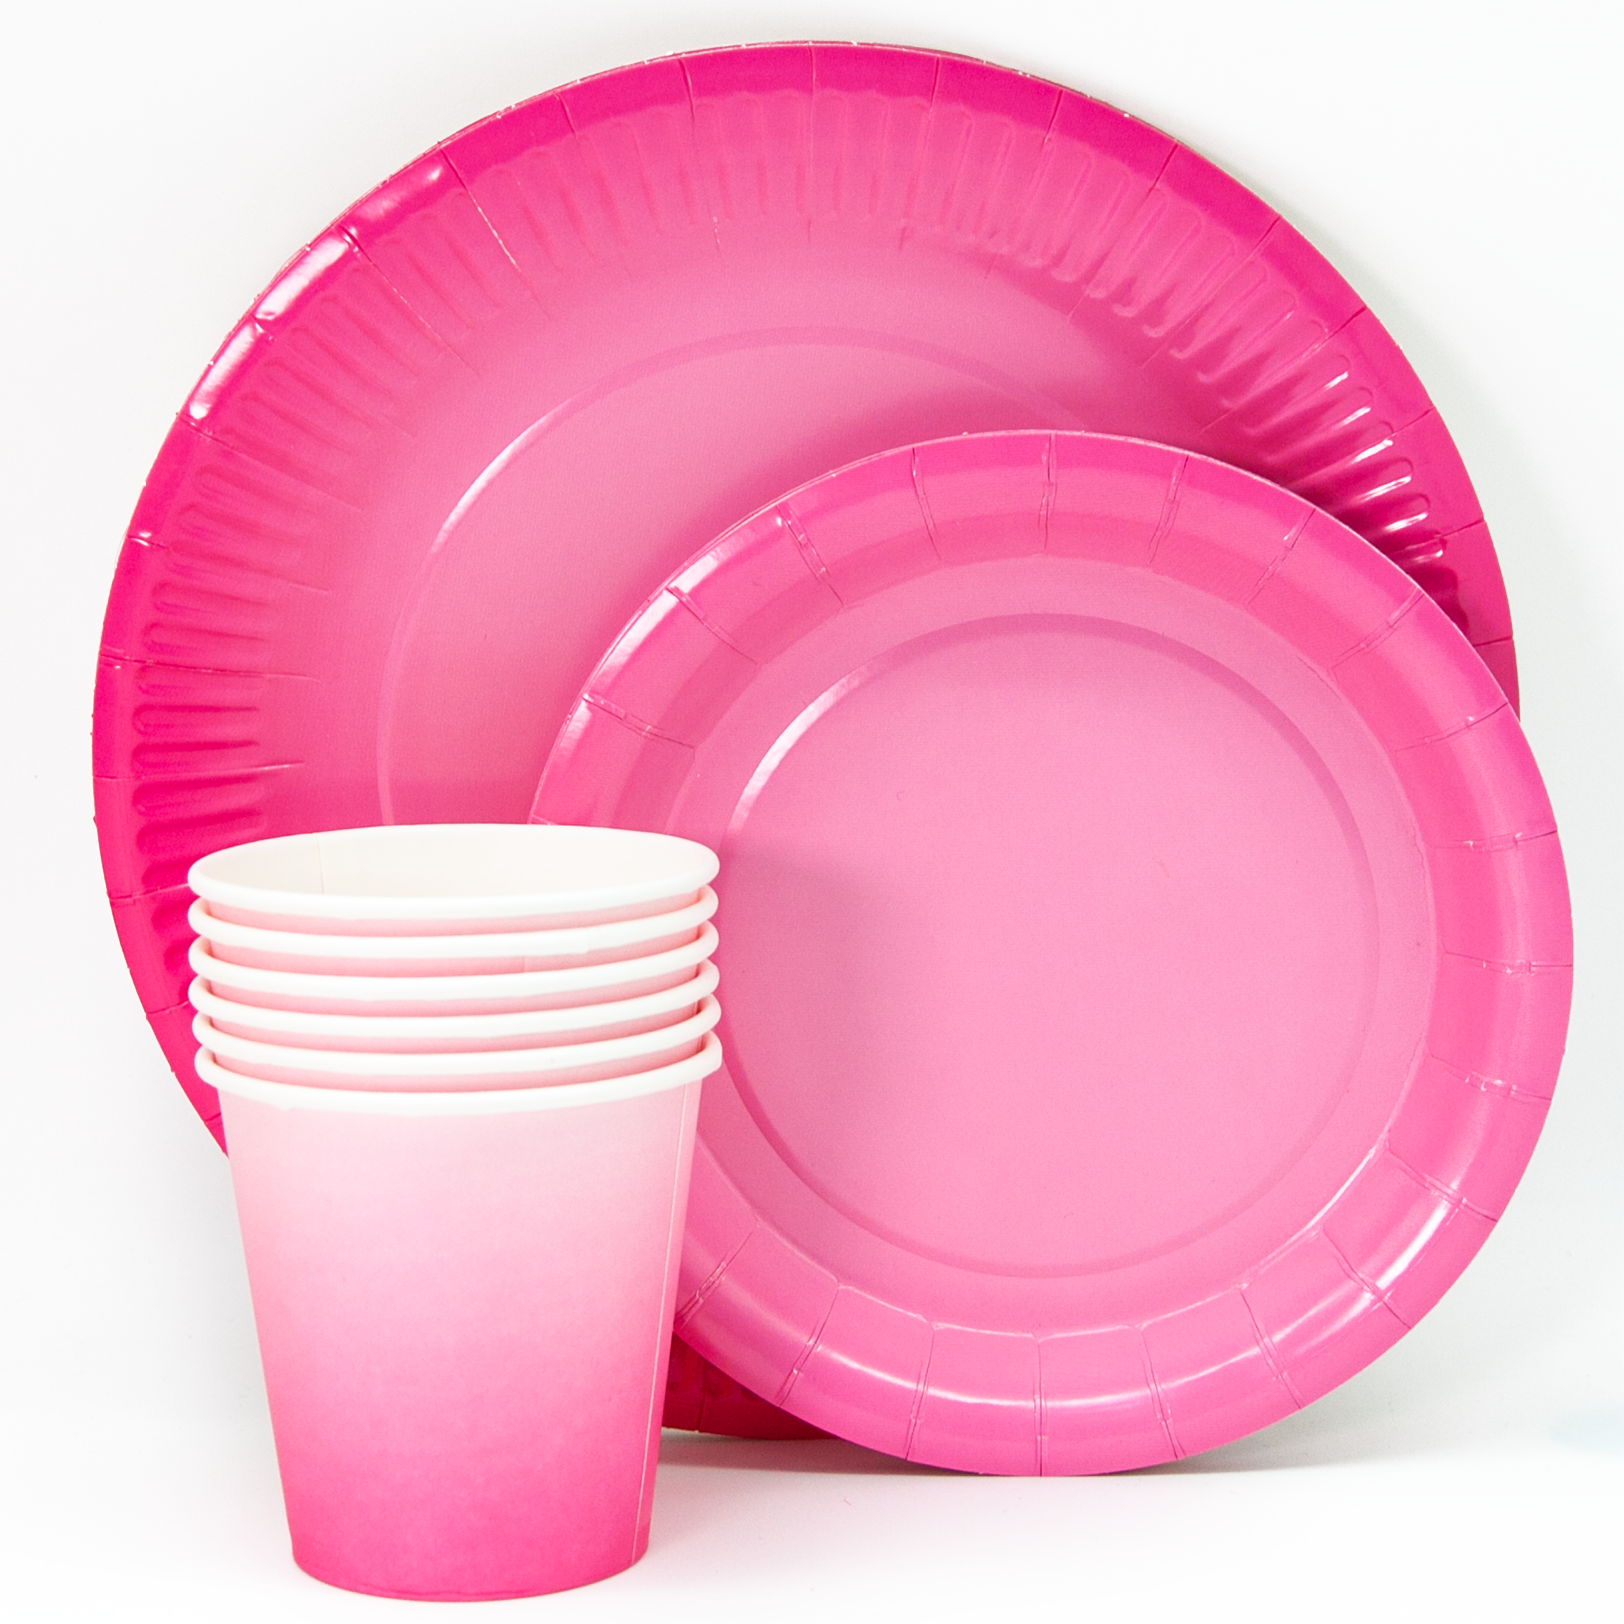 Купить одноразовую посуду пластиковую. Одноразовая посуда. Тарелки одноразовые розовые. Пластиковая посуда. Пластиковая посуда розовая.